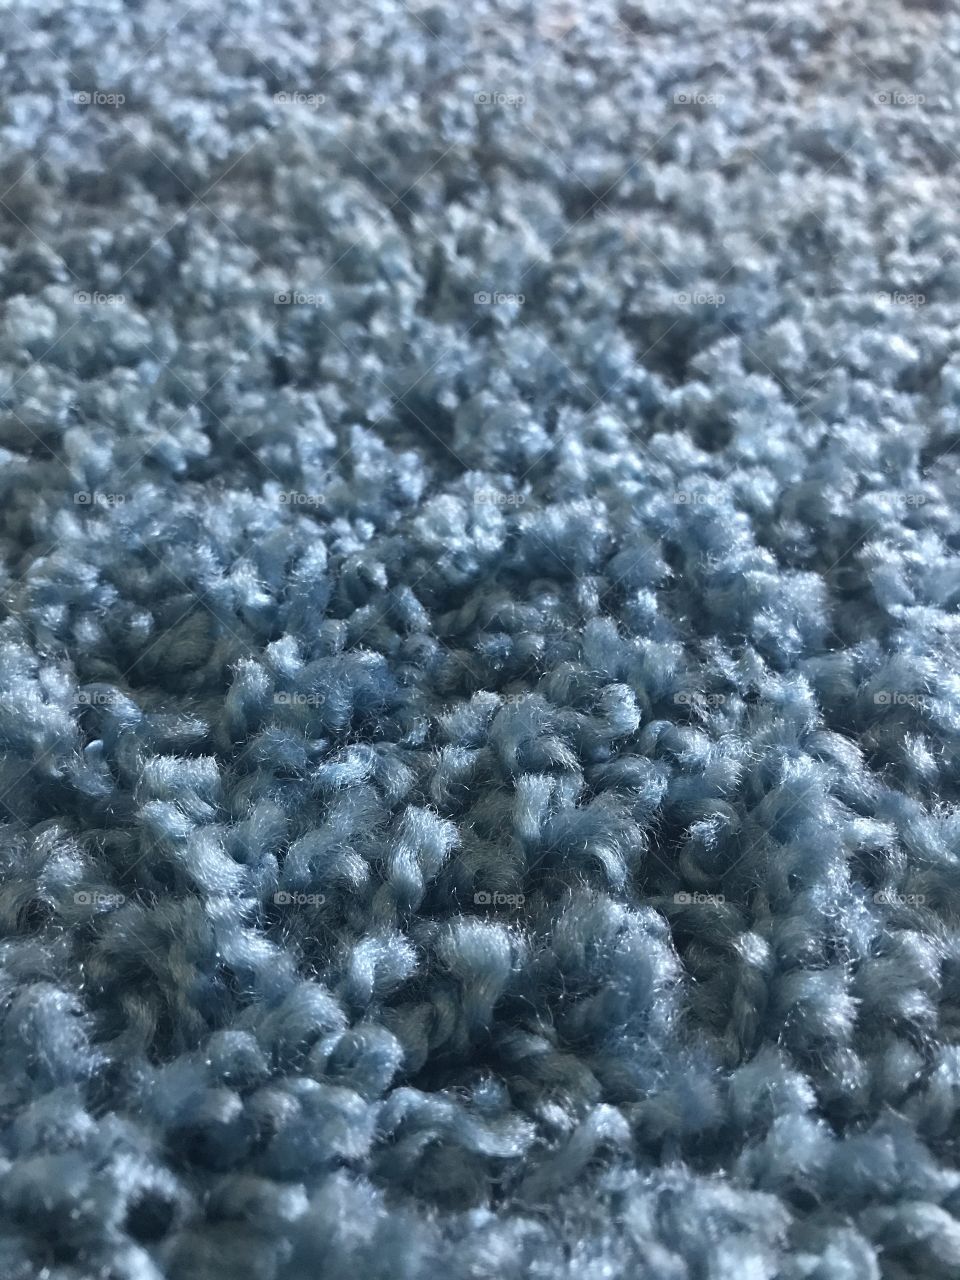 Plush carpet